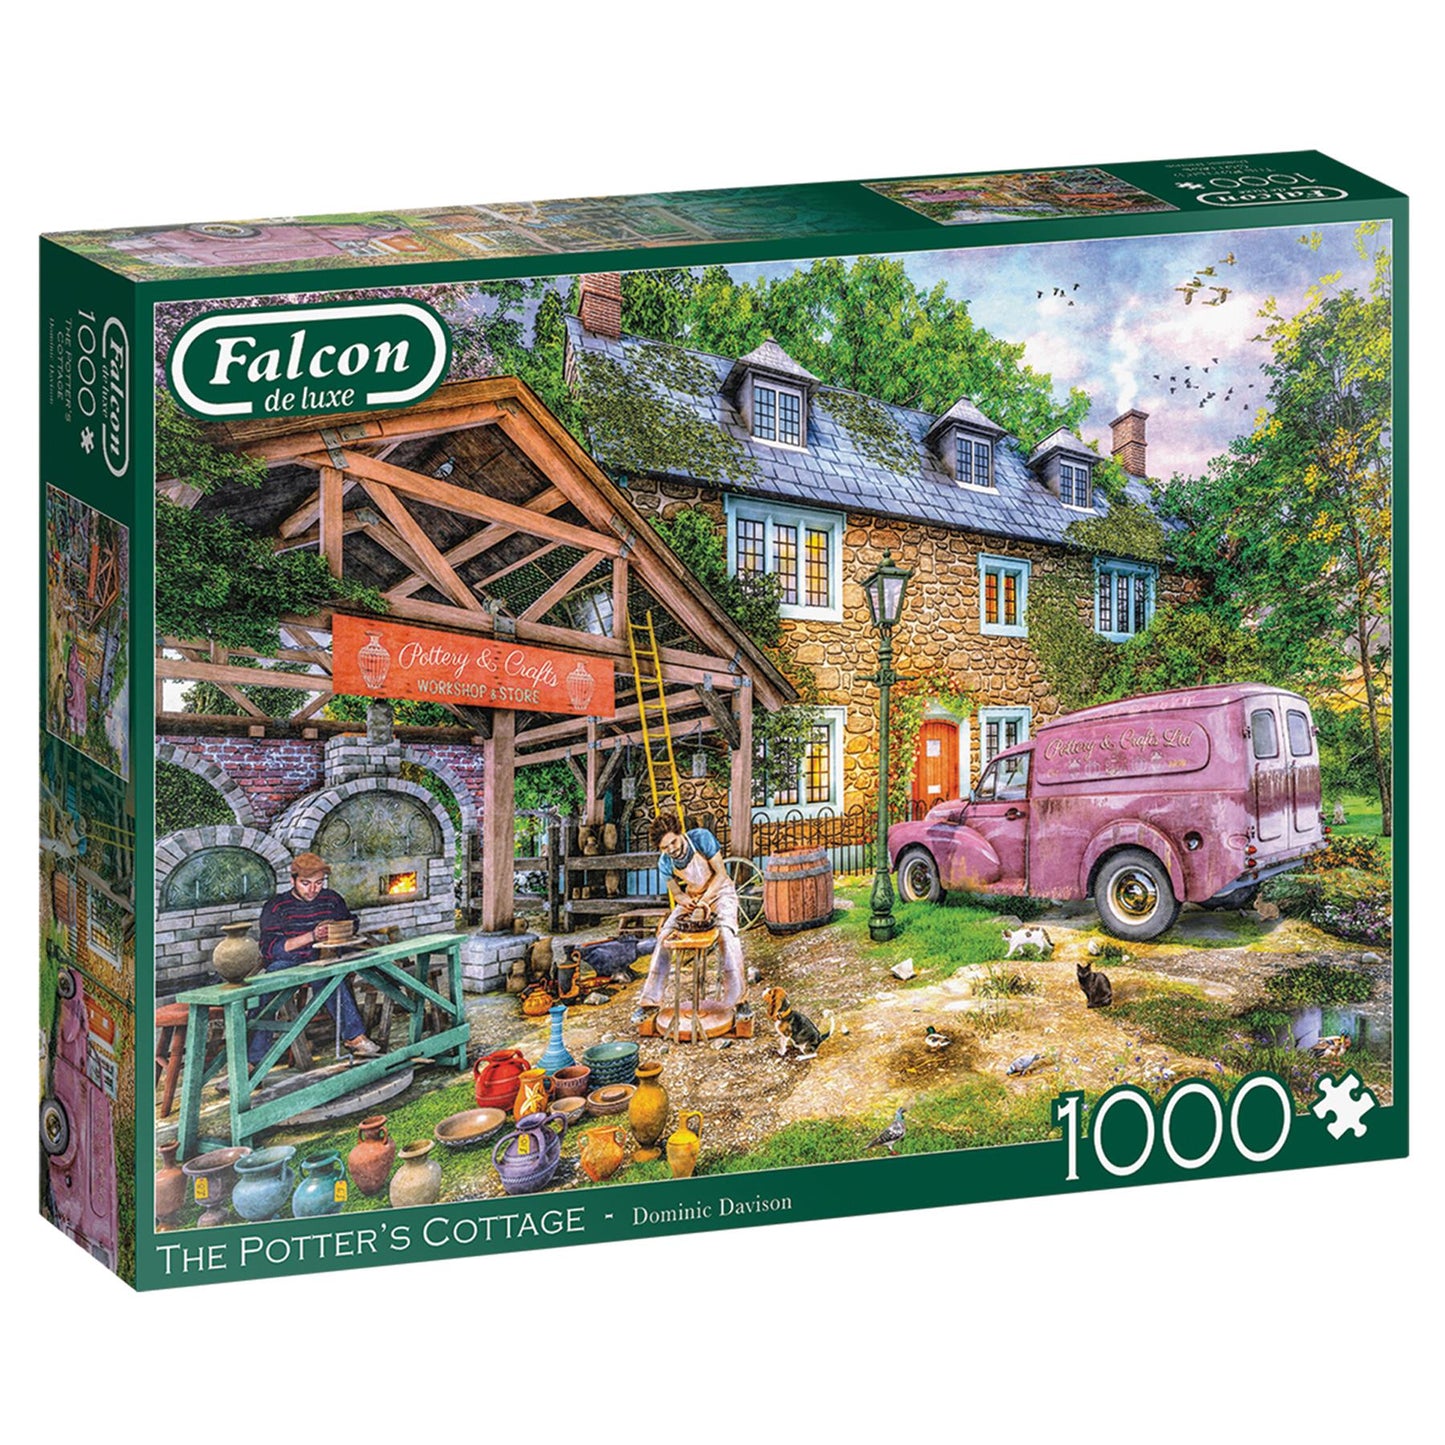 Potters Cottage 1000 Piece Jigsaw Puzzle